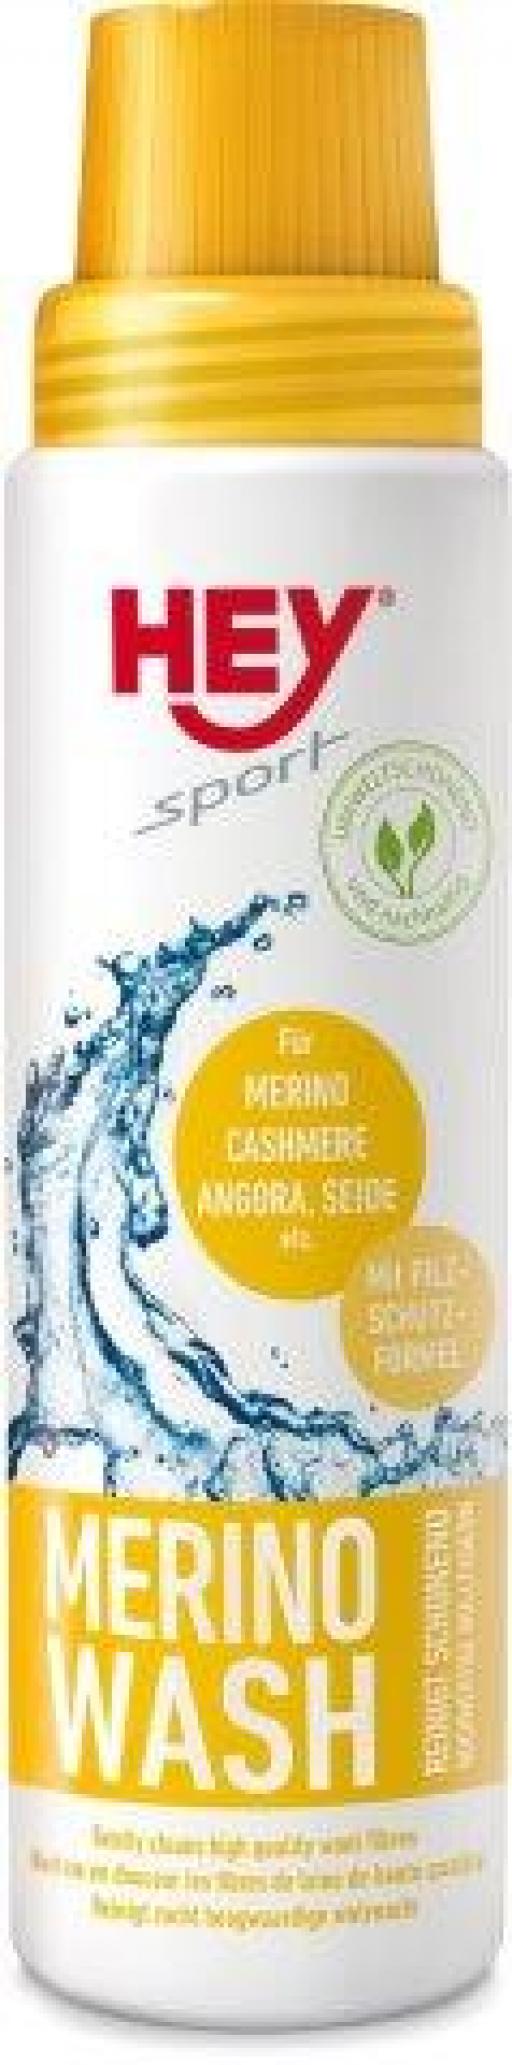 HEY-SPORT Merino-Wash, 250 ml